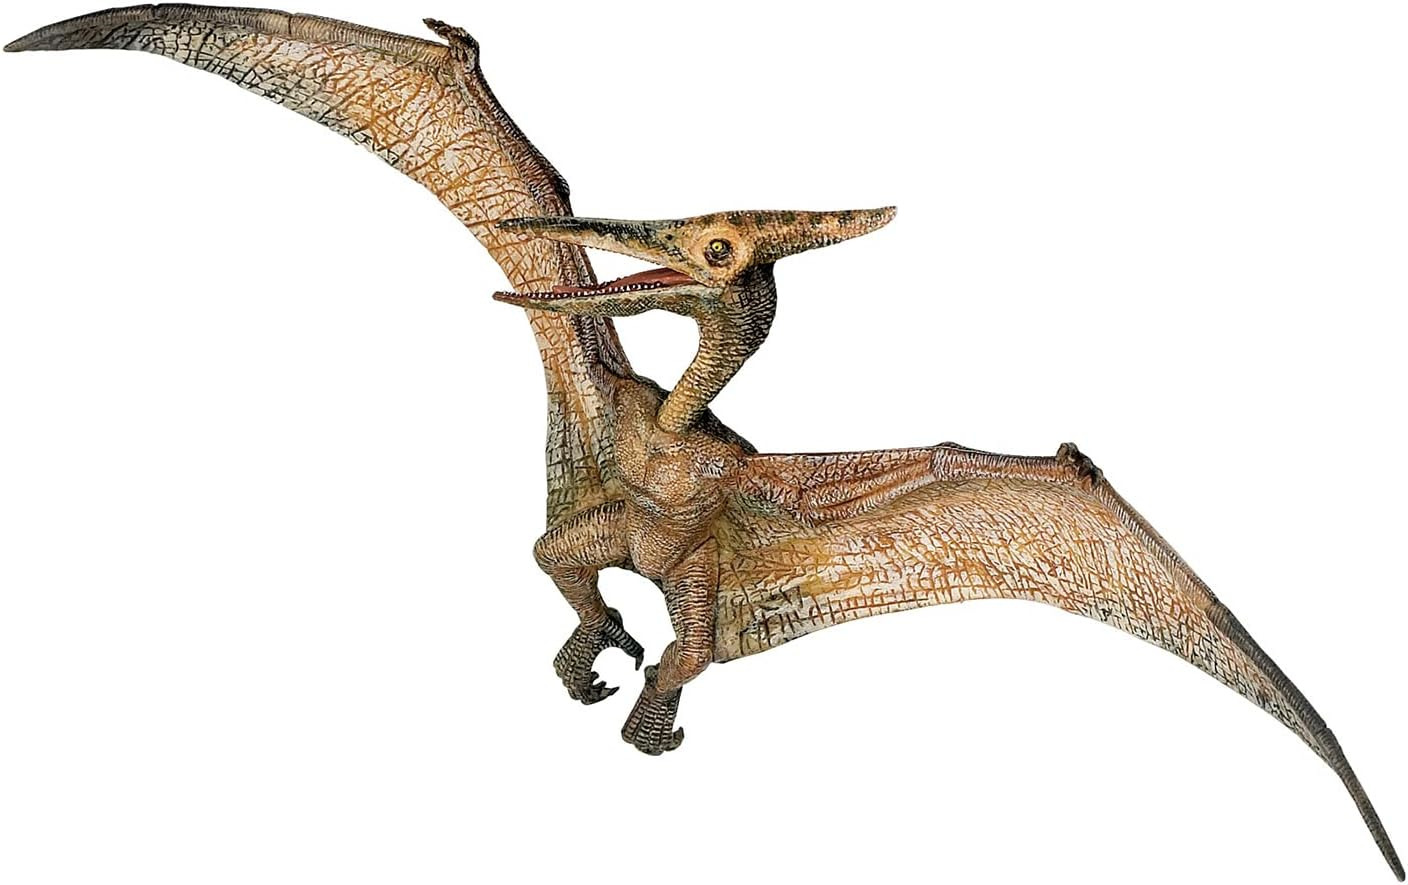 Papo The Dinosaur Figure, Pteranodon